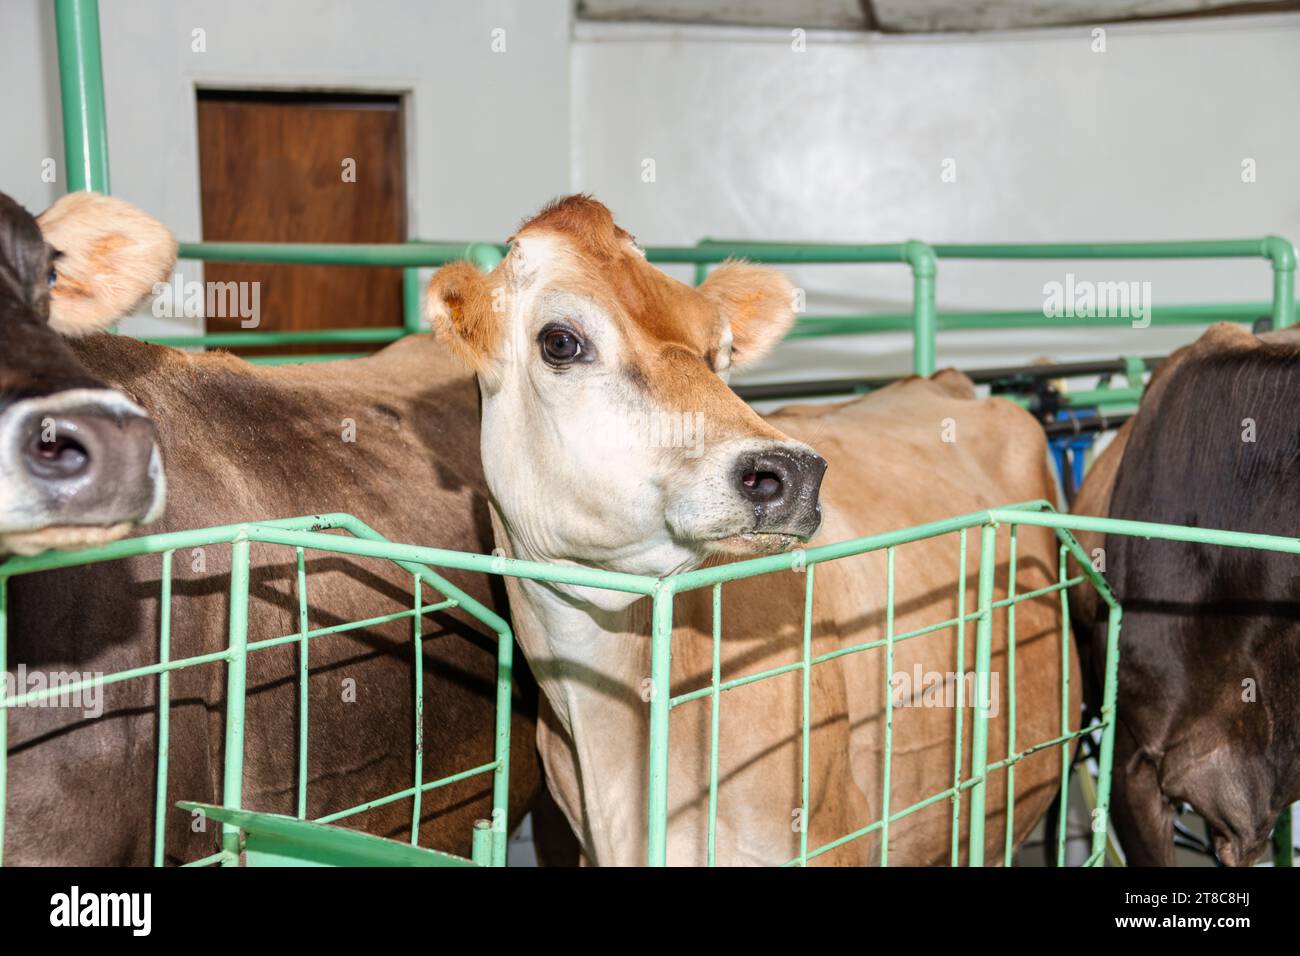 Bauernhof, Milchproduktion, Kühe drinnen in der Melkhalle Stockfoto